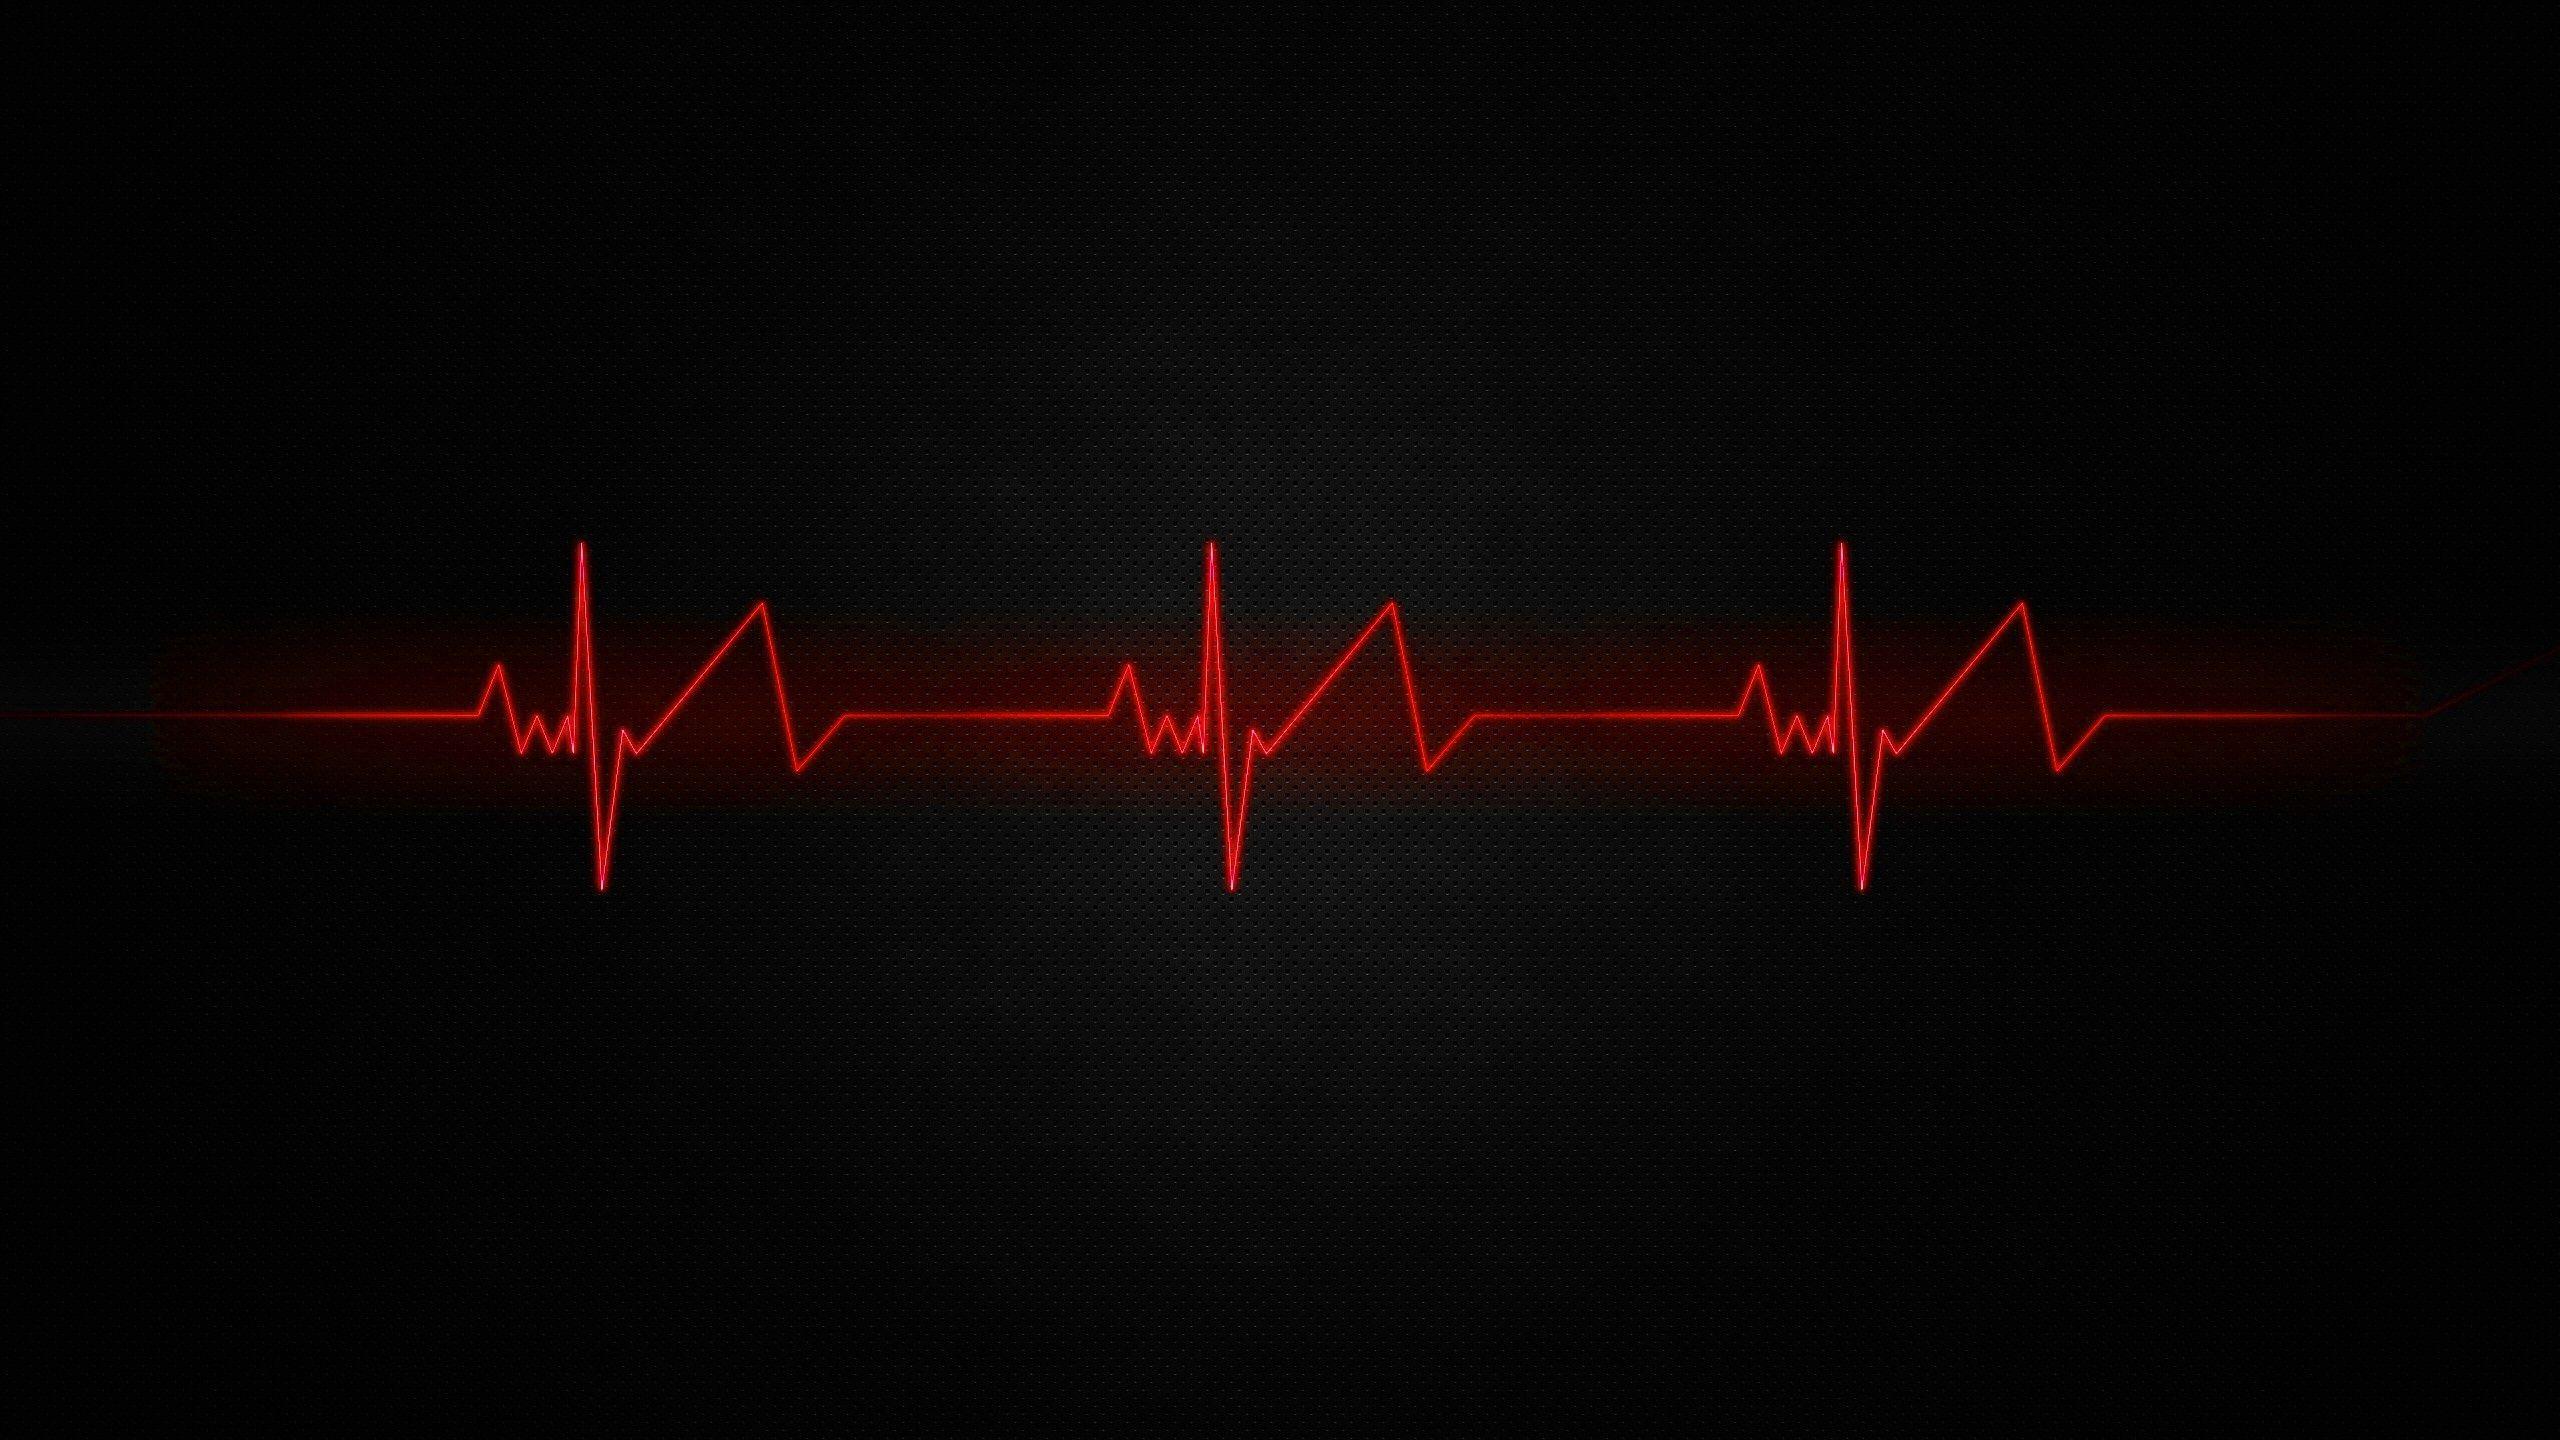 Heart beat, feelings, love, HD phone wallpaper | Peakpx